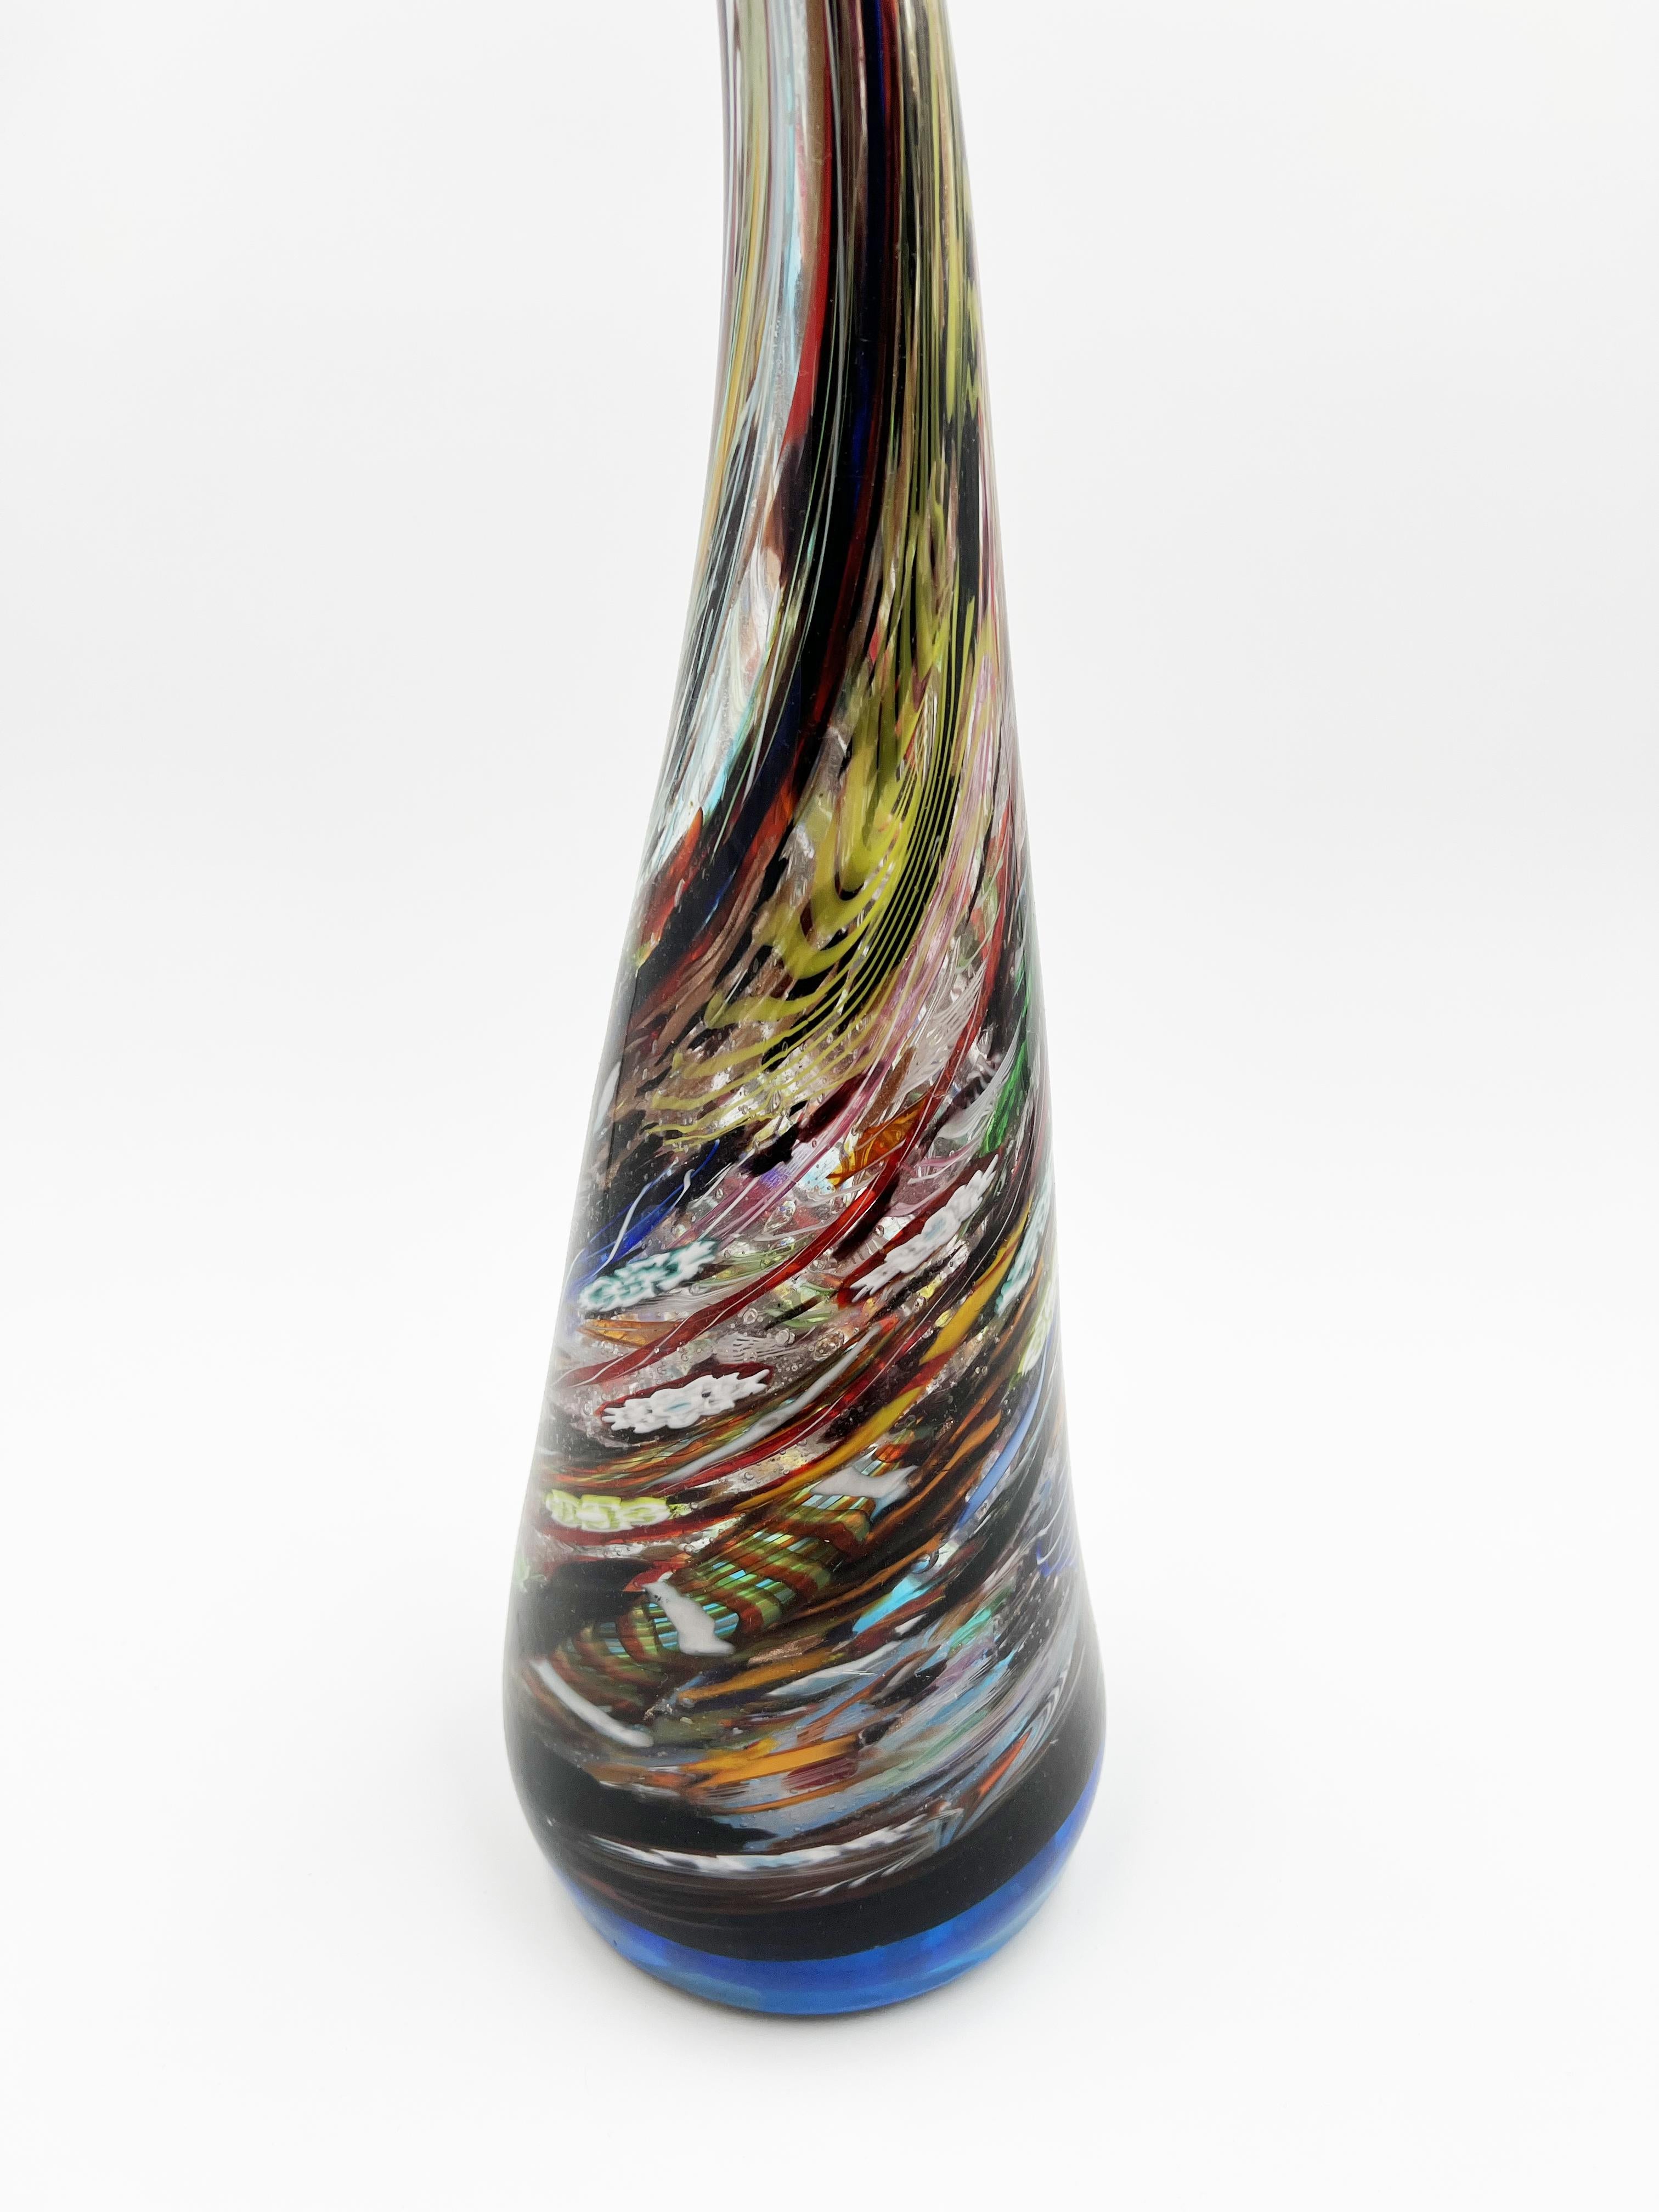 Magnifique vase Sirvantese dans le style de Dino Martens. La pièce originale qui l'a inspirée (Sirvantese Bottle 1956 Mod. 6319) a été vendue aux enchères de Wright à Chicago pour 221 000 dollars. Il n'est pas exclu qu'il ait été fabriqué par le